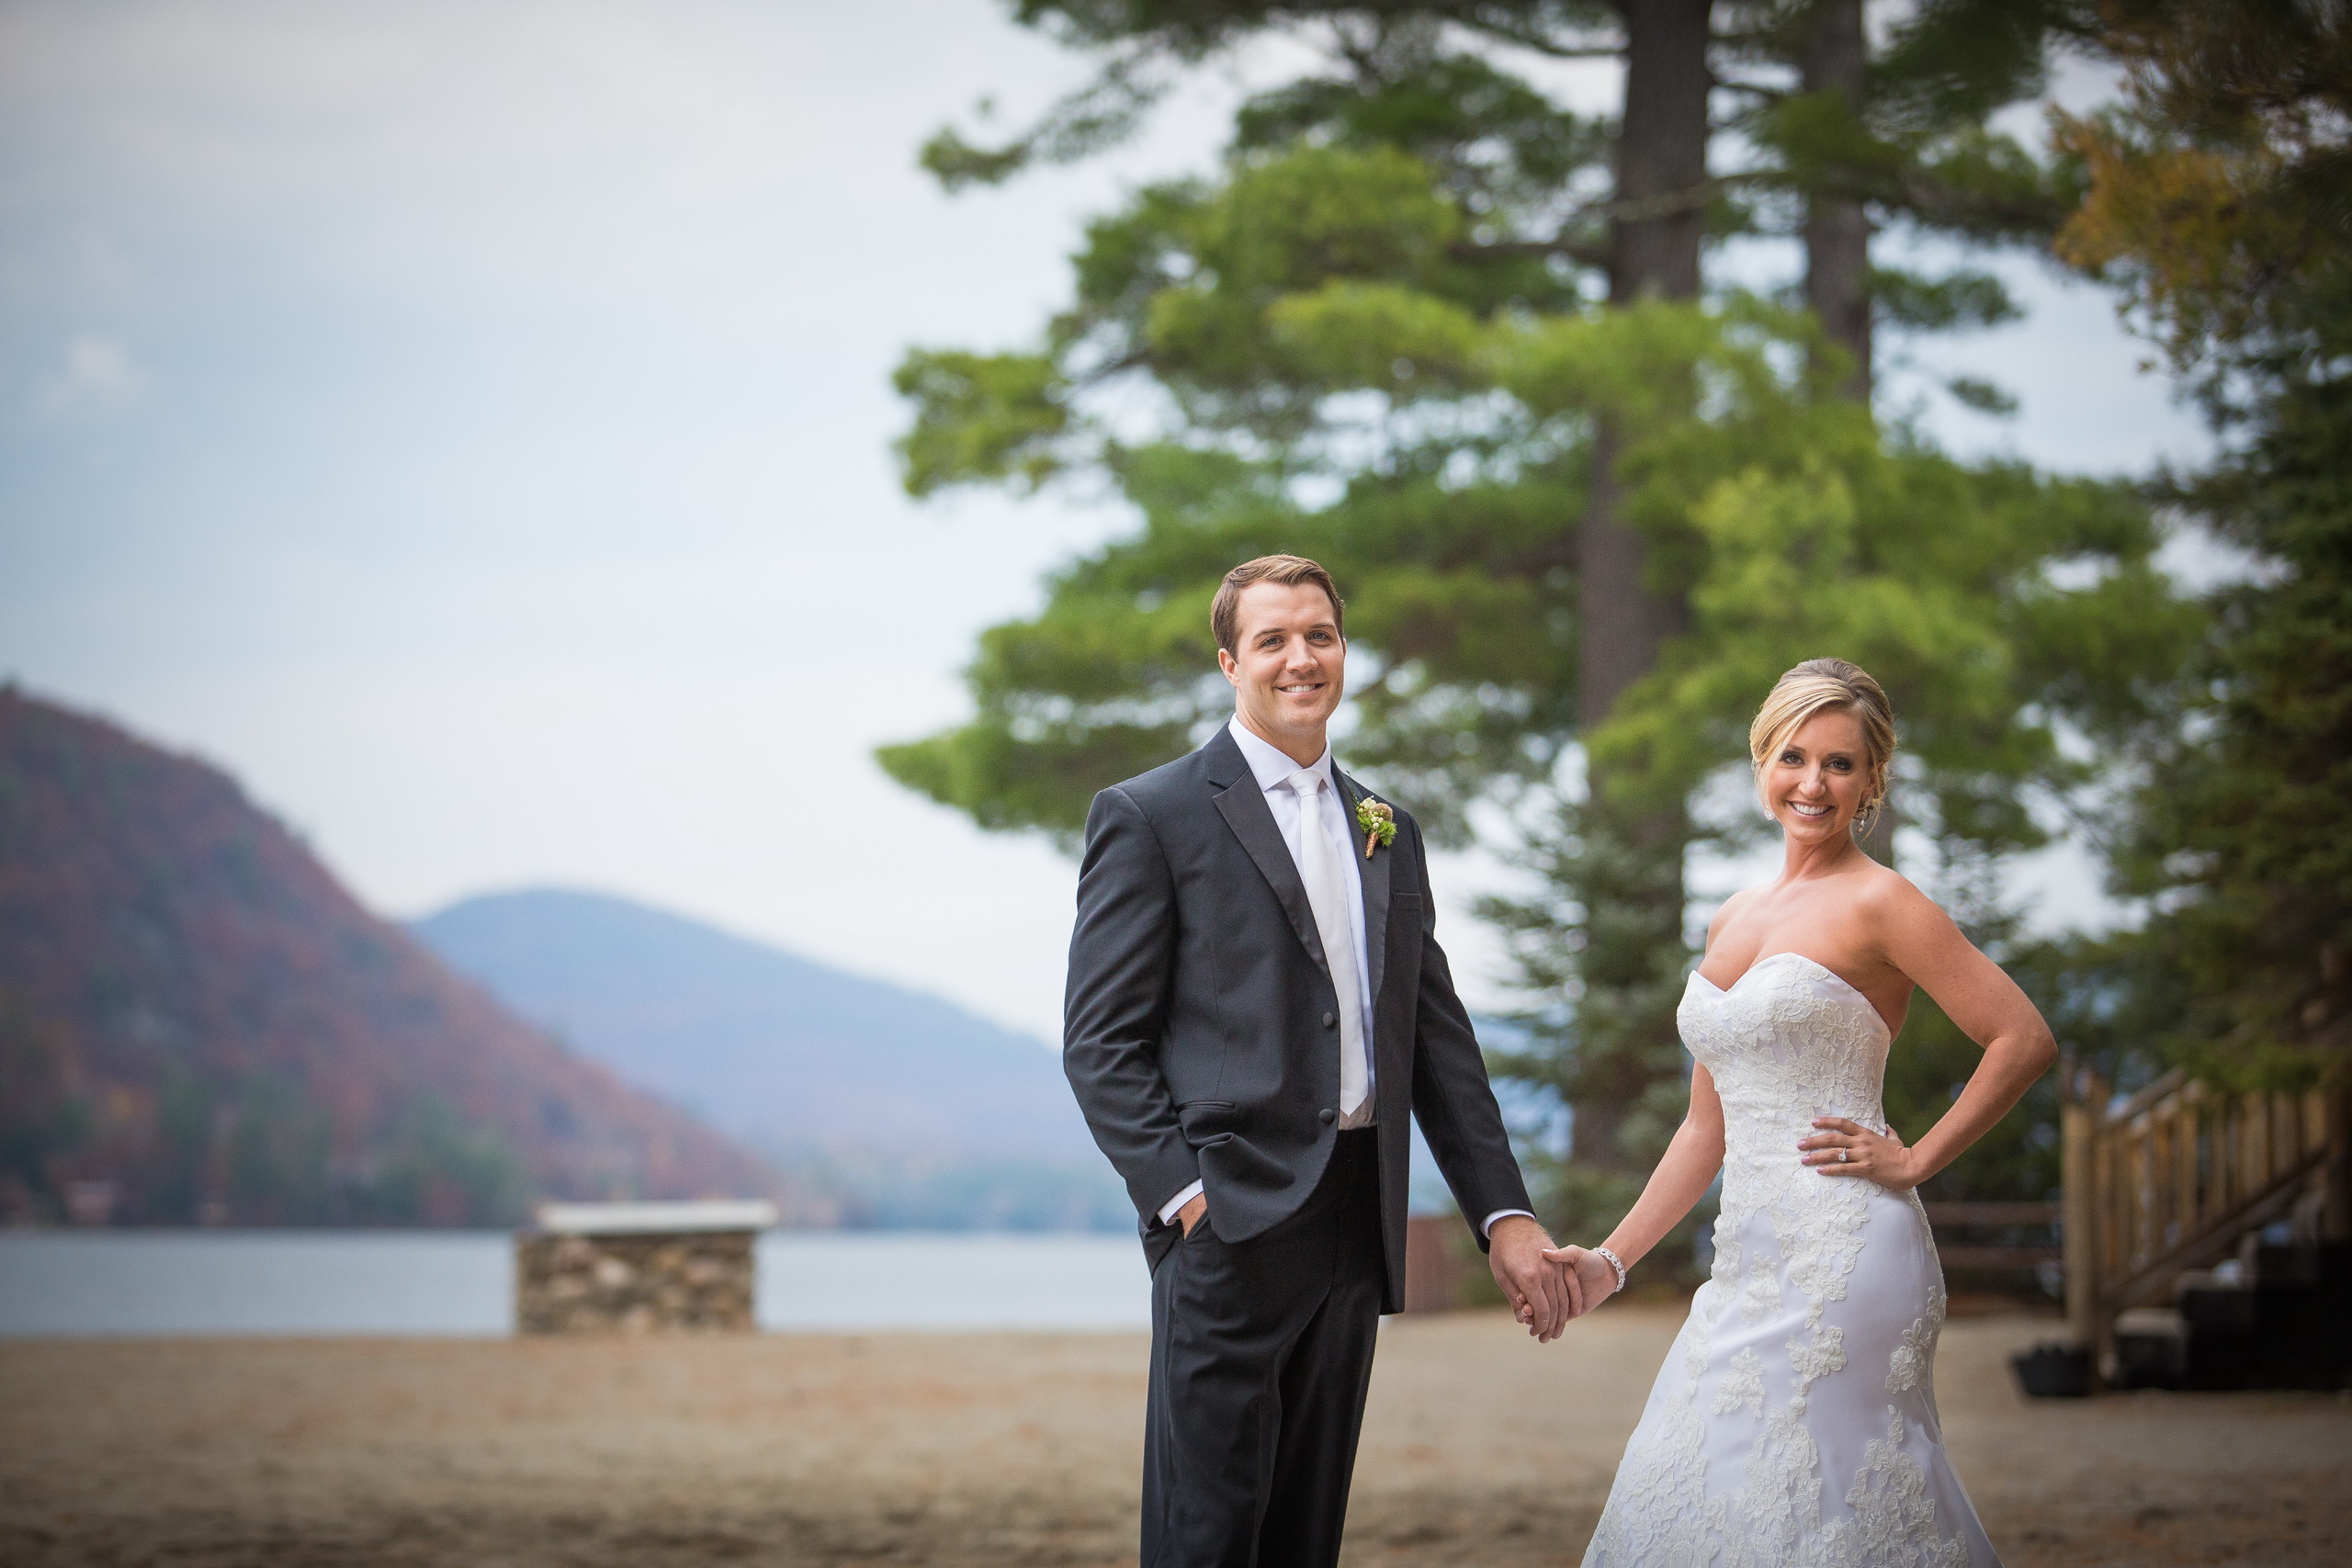 Renee & Josh / Brant Lake Jimbo's Wedding – Matt Ramos Photography